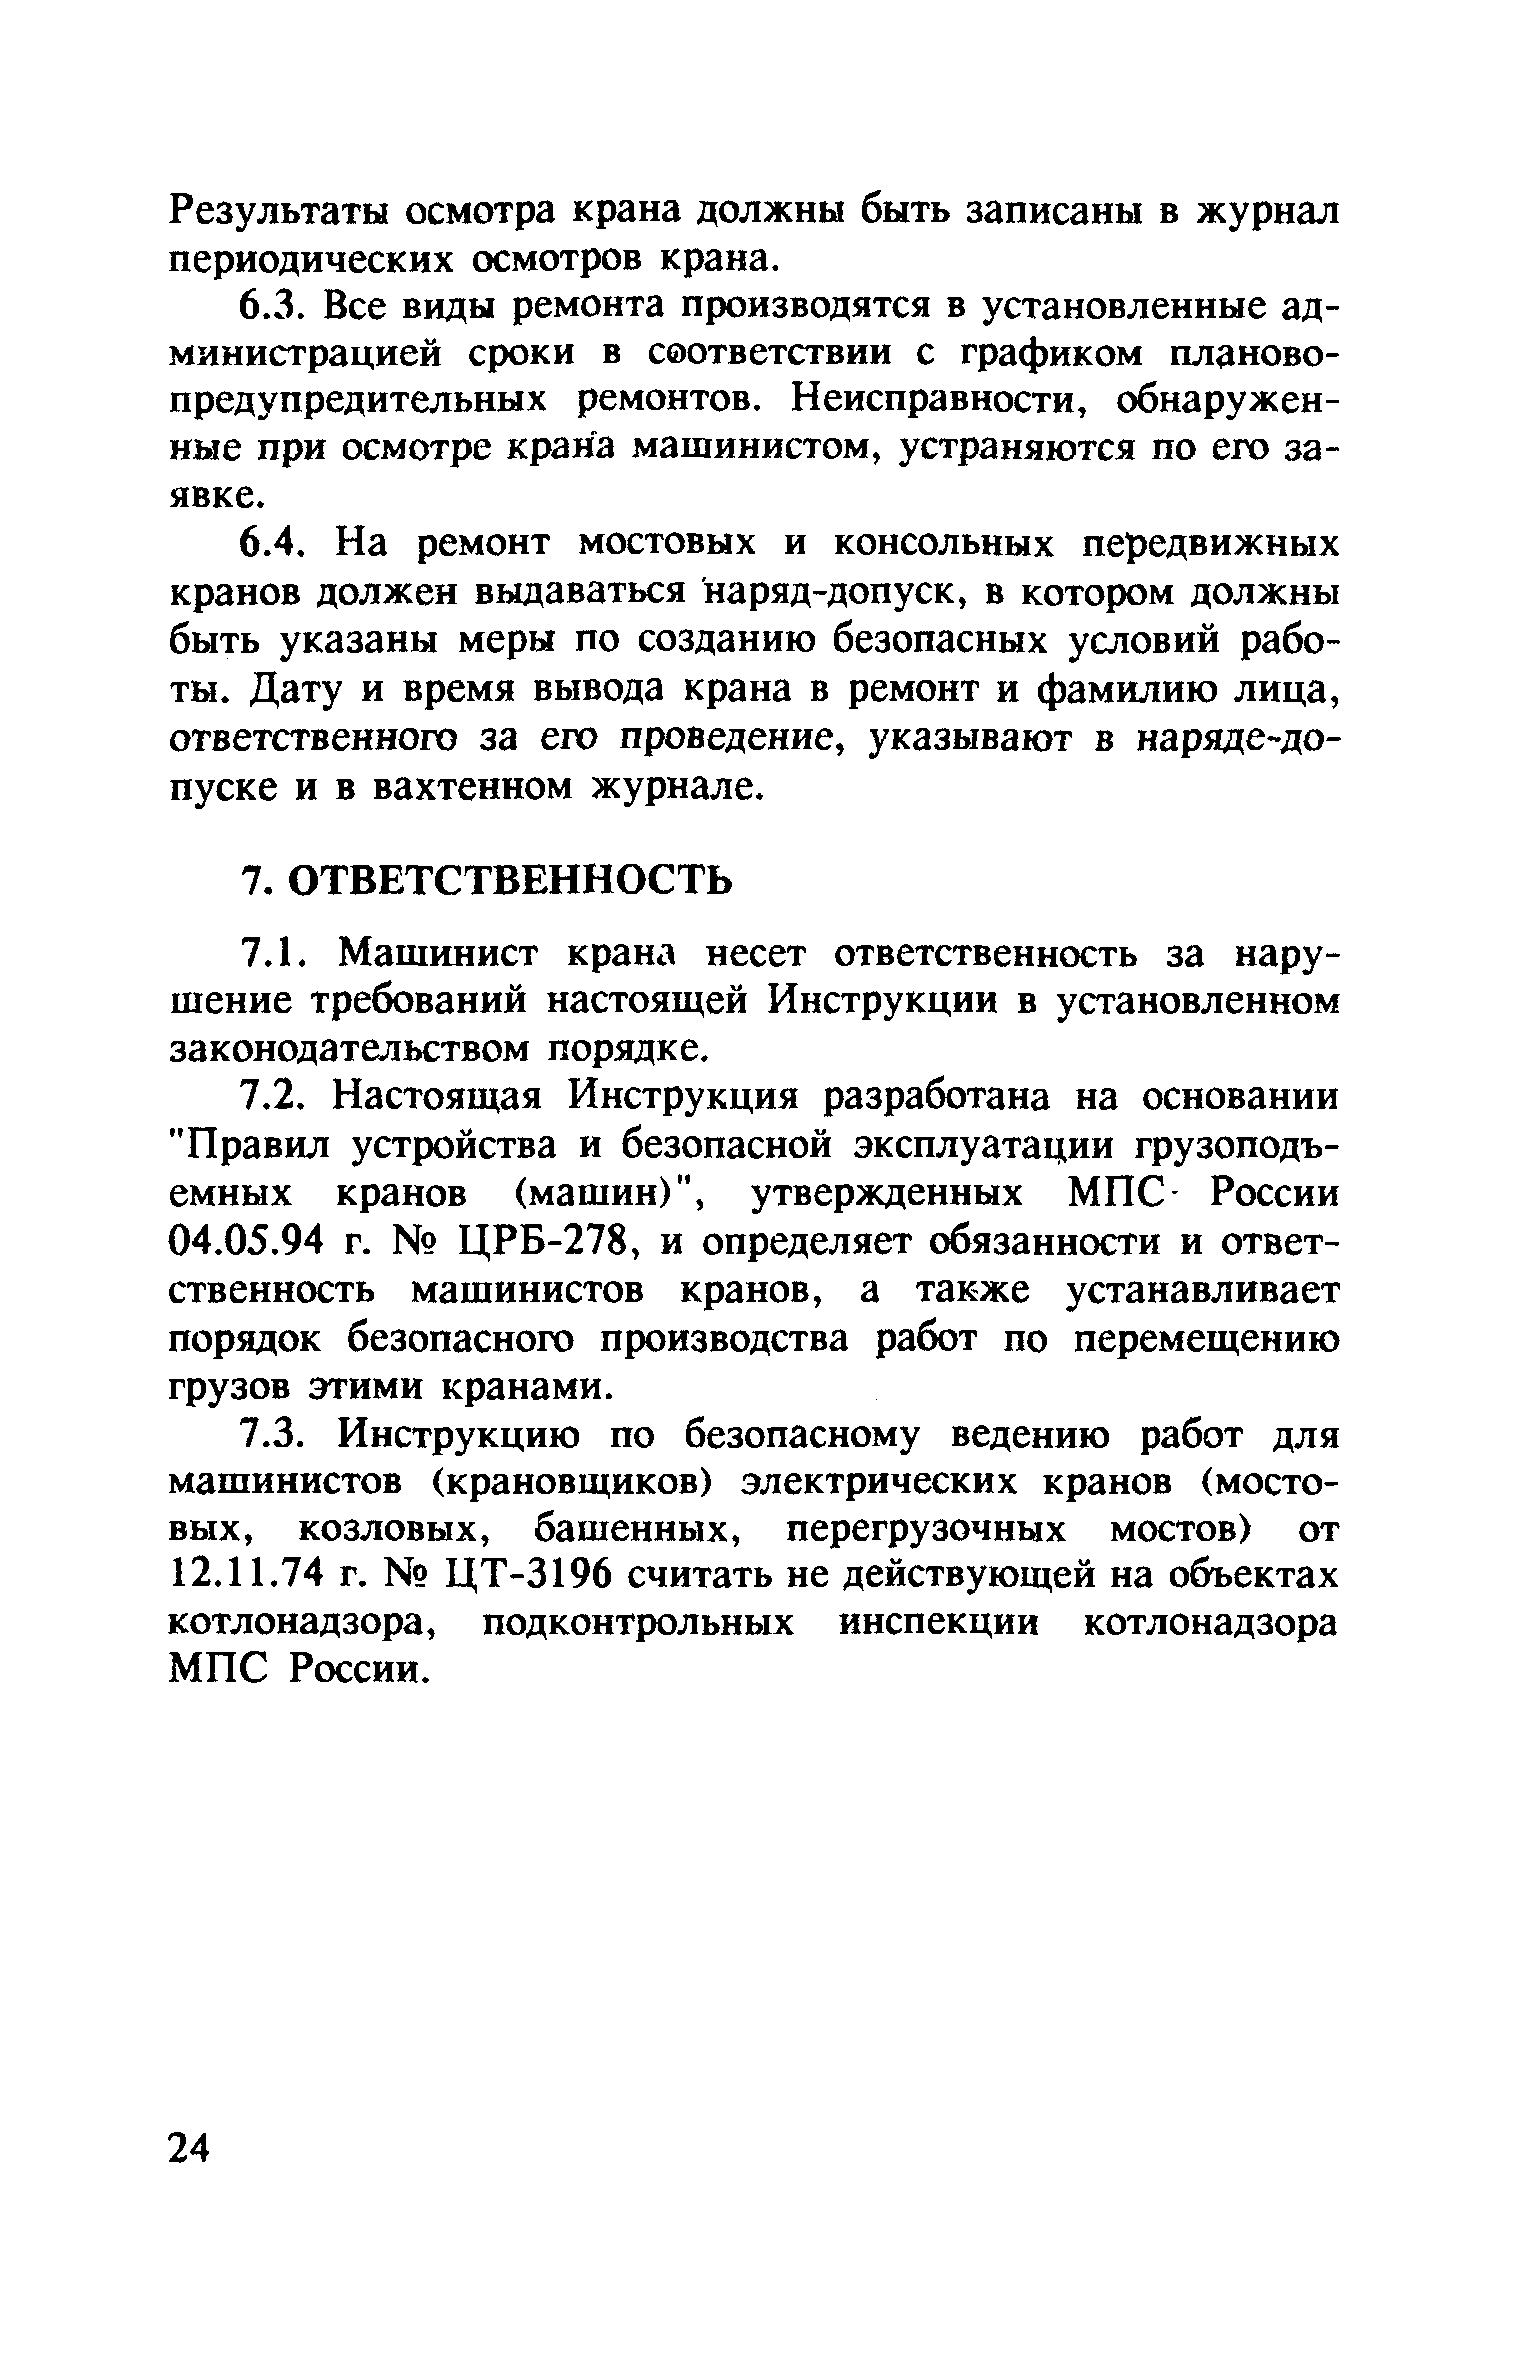 Инструкция Машинистов Мостовых Кранов